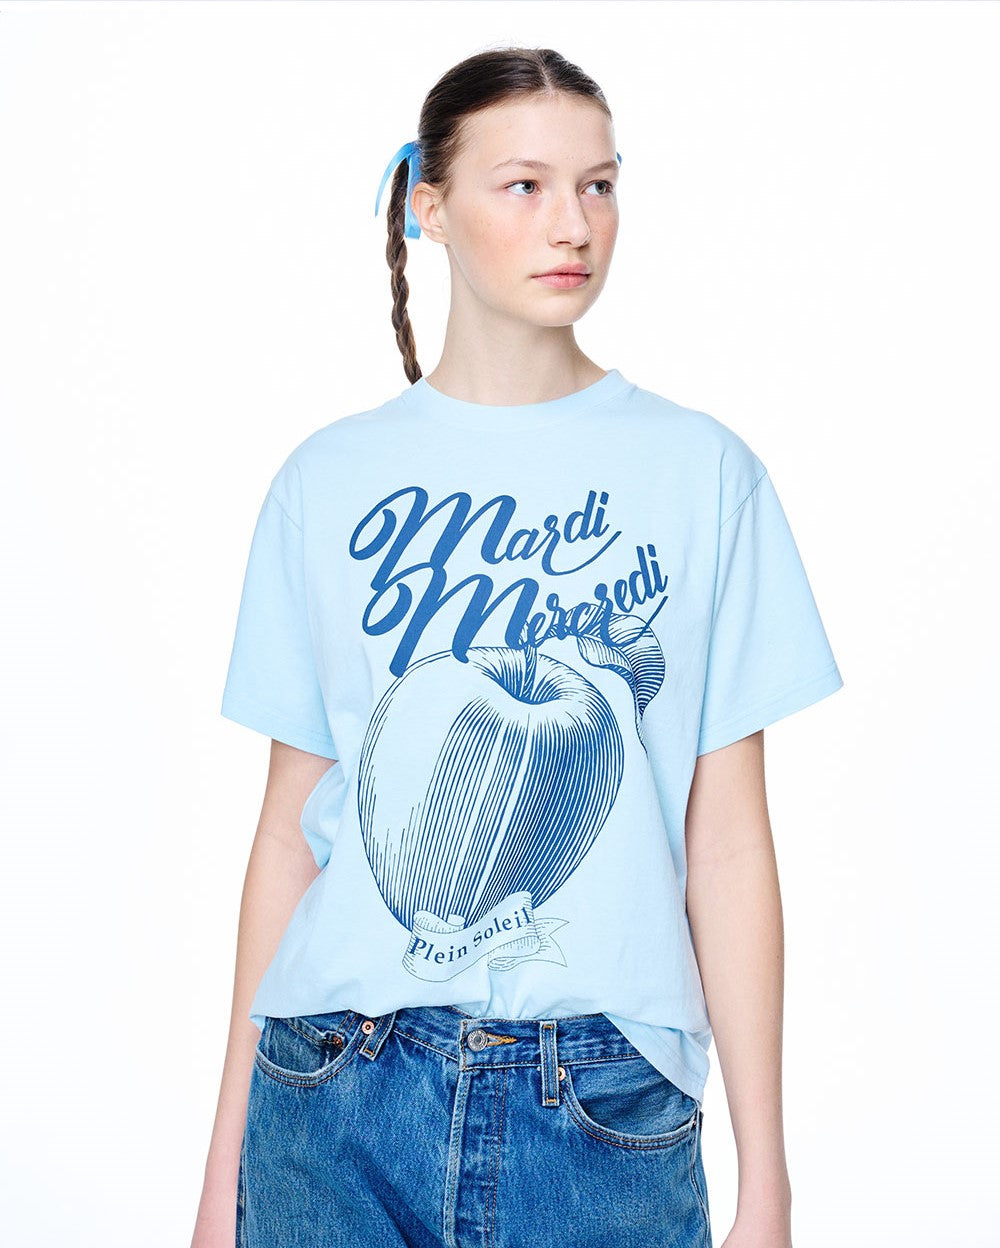 Mardi Mercredi • T-shirt Les Pommes